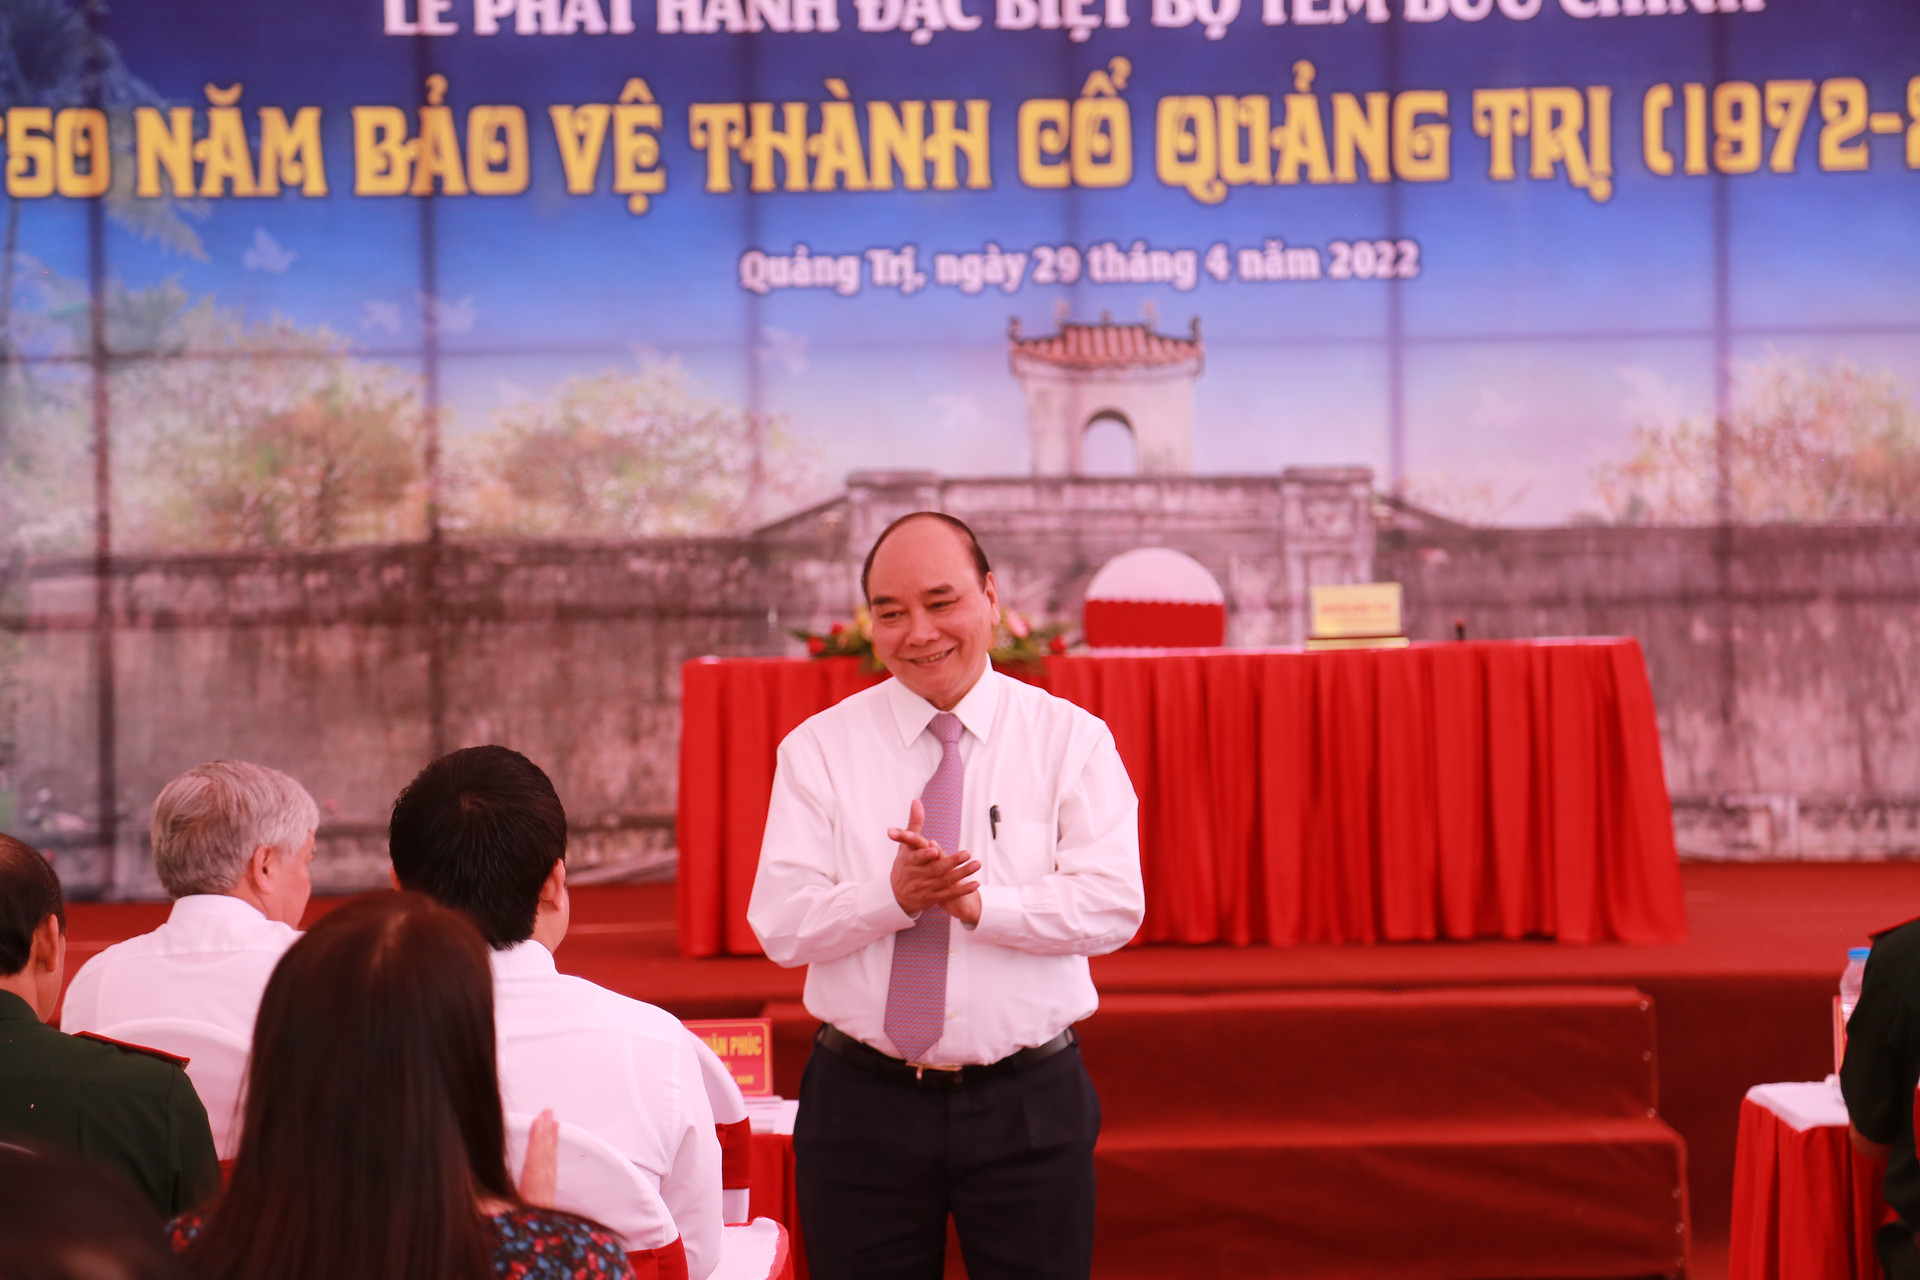 Chủ tịch nước Nguyễn Xuân Phúc tham dự lễ phát hành bộ tem đặc biệt “50 năm bảo vệ Thành cổ Quảng Trị”.